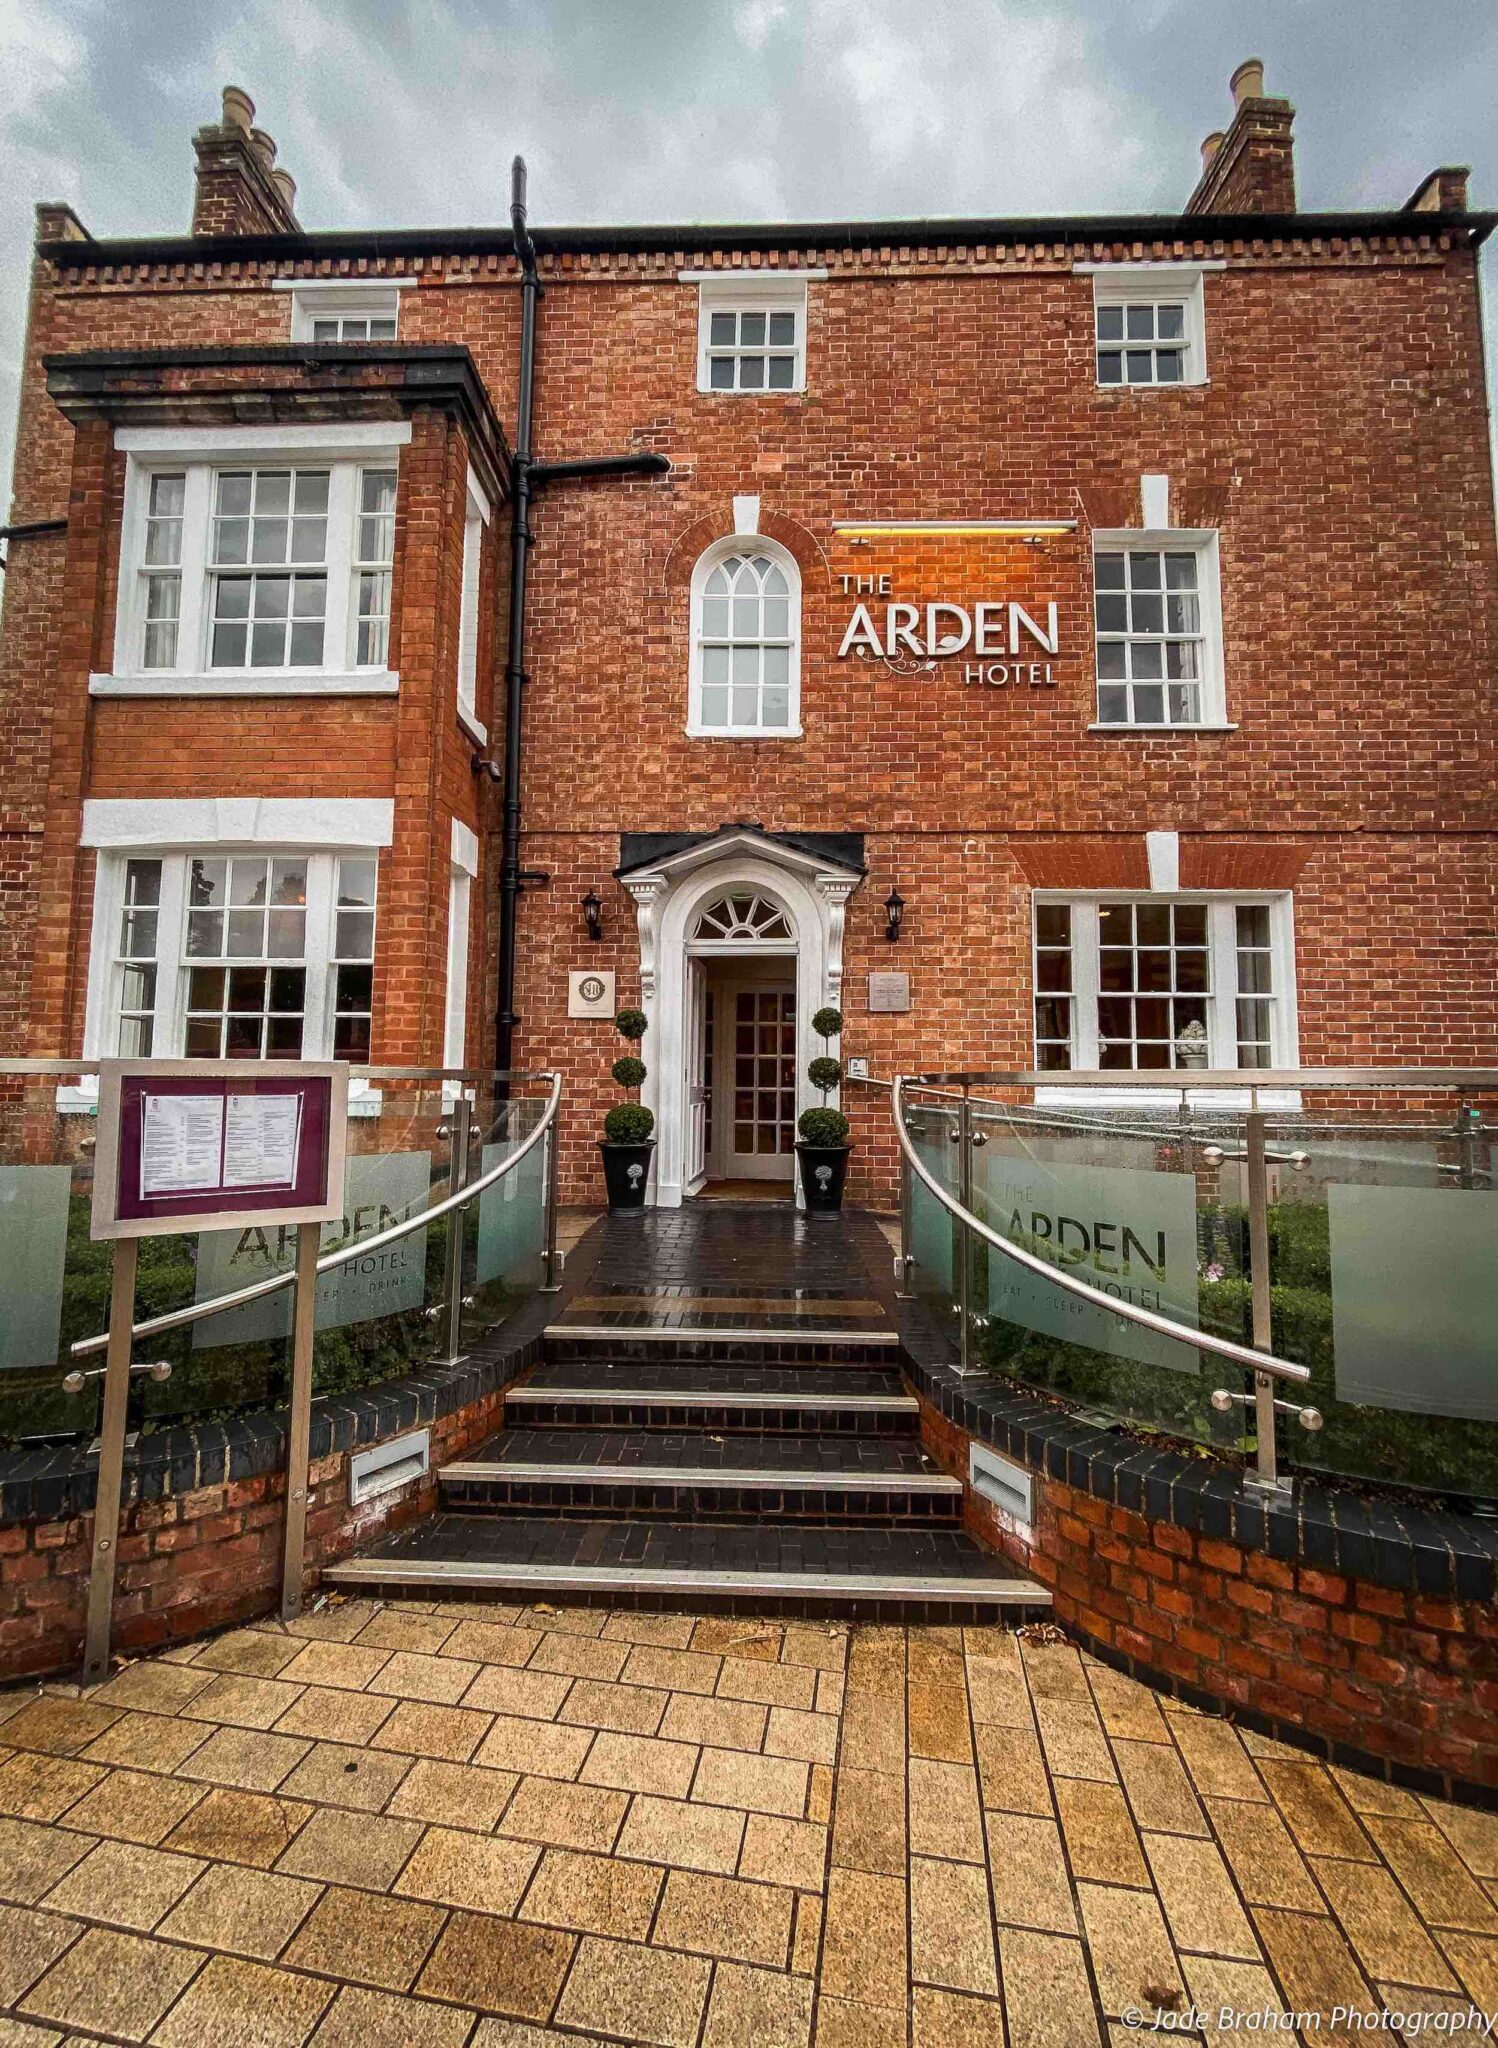 Hotels in Warwickshire - The Arden Hotel